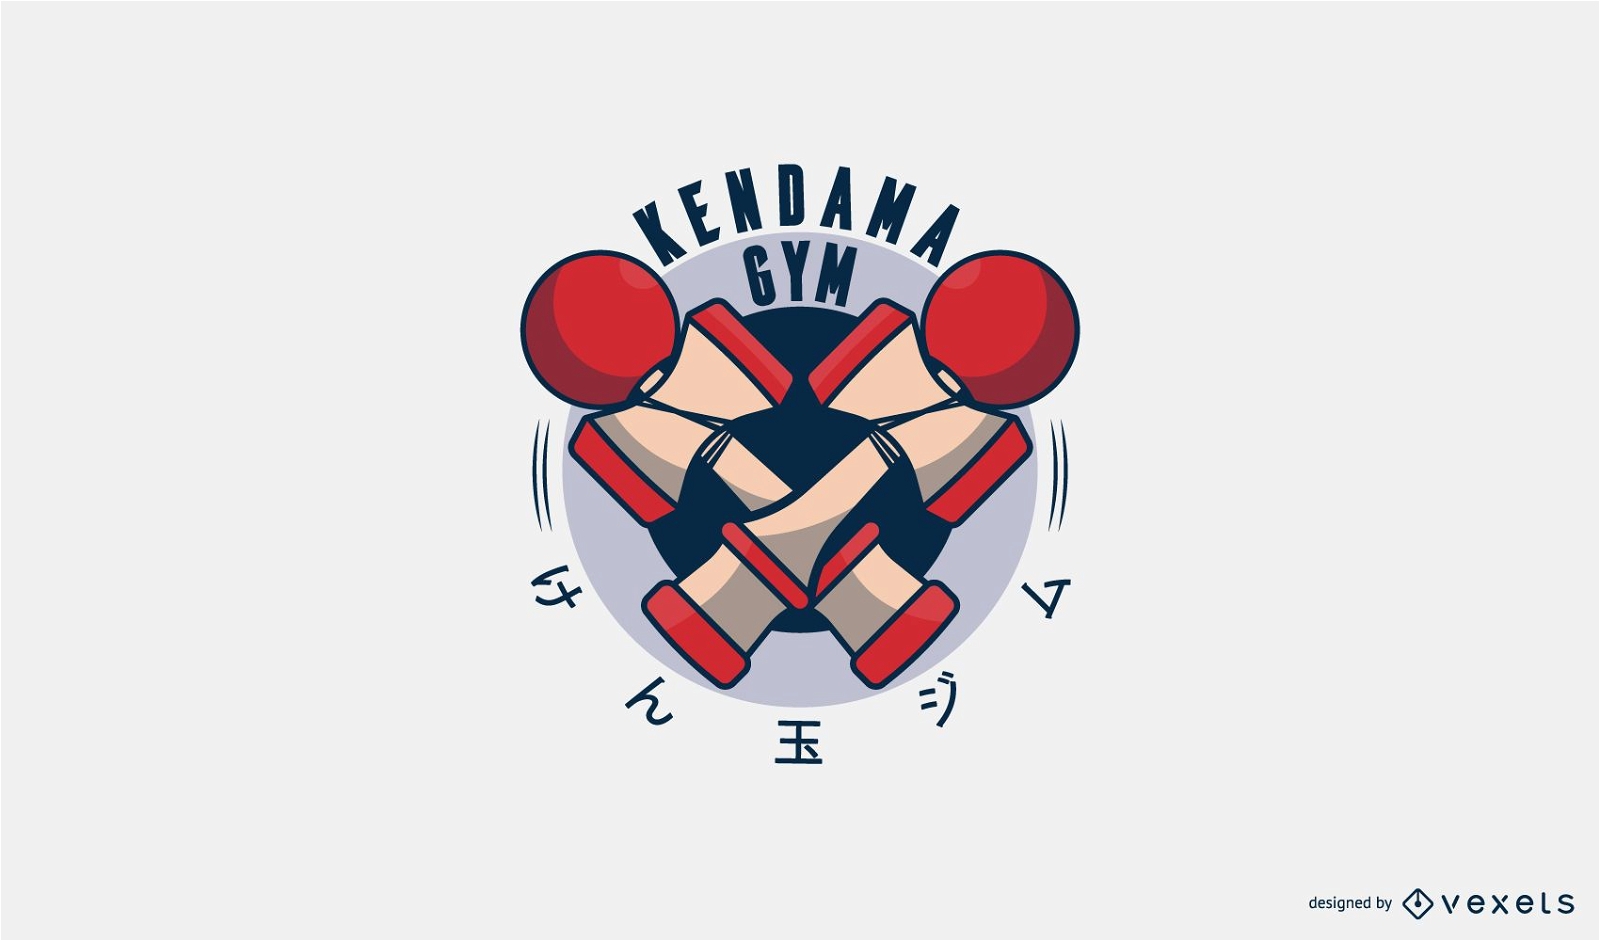 Kendana Gym Logo Design